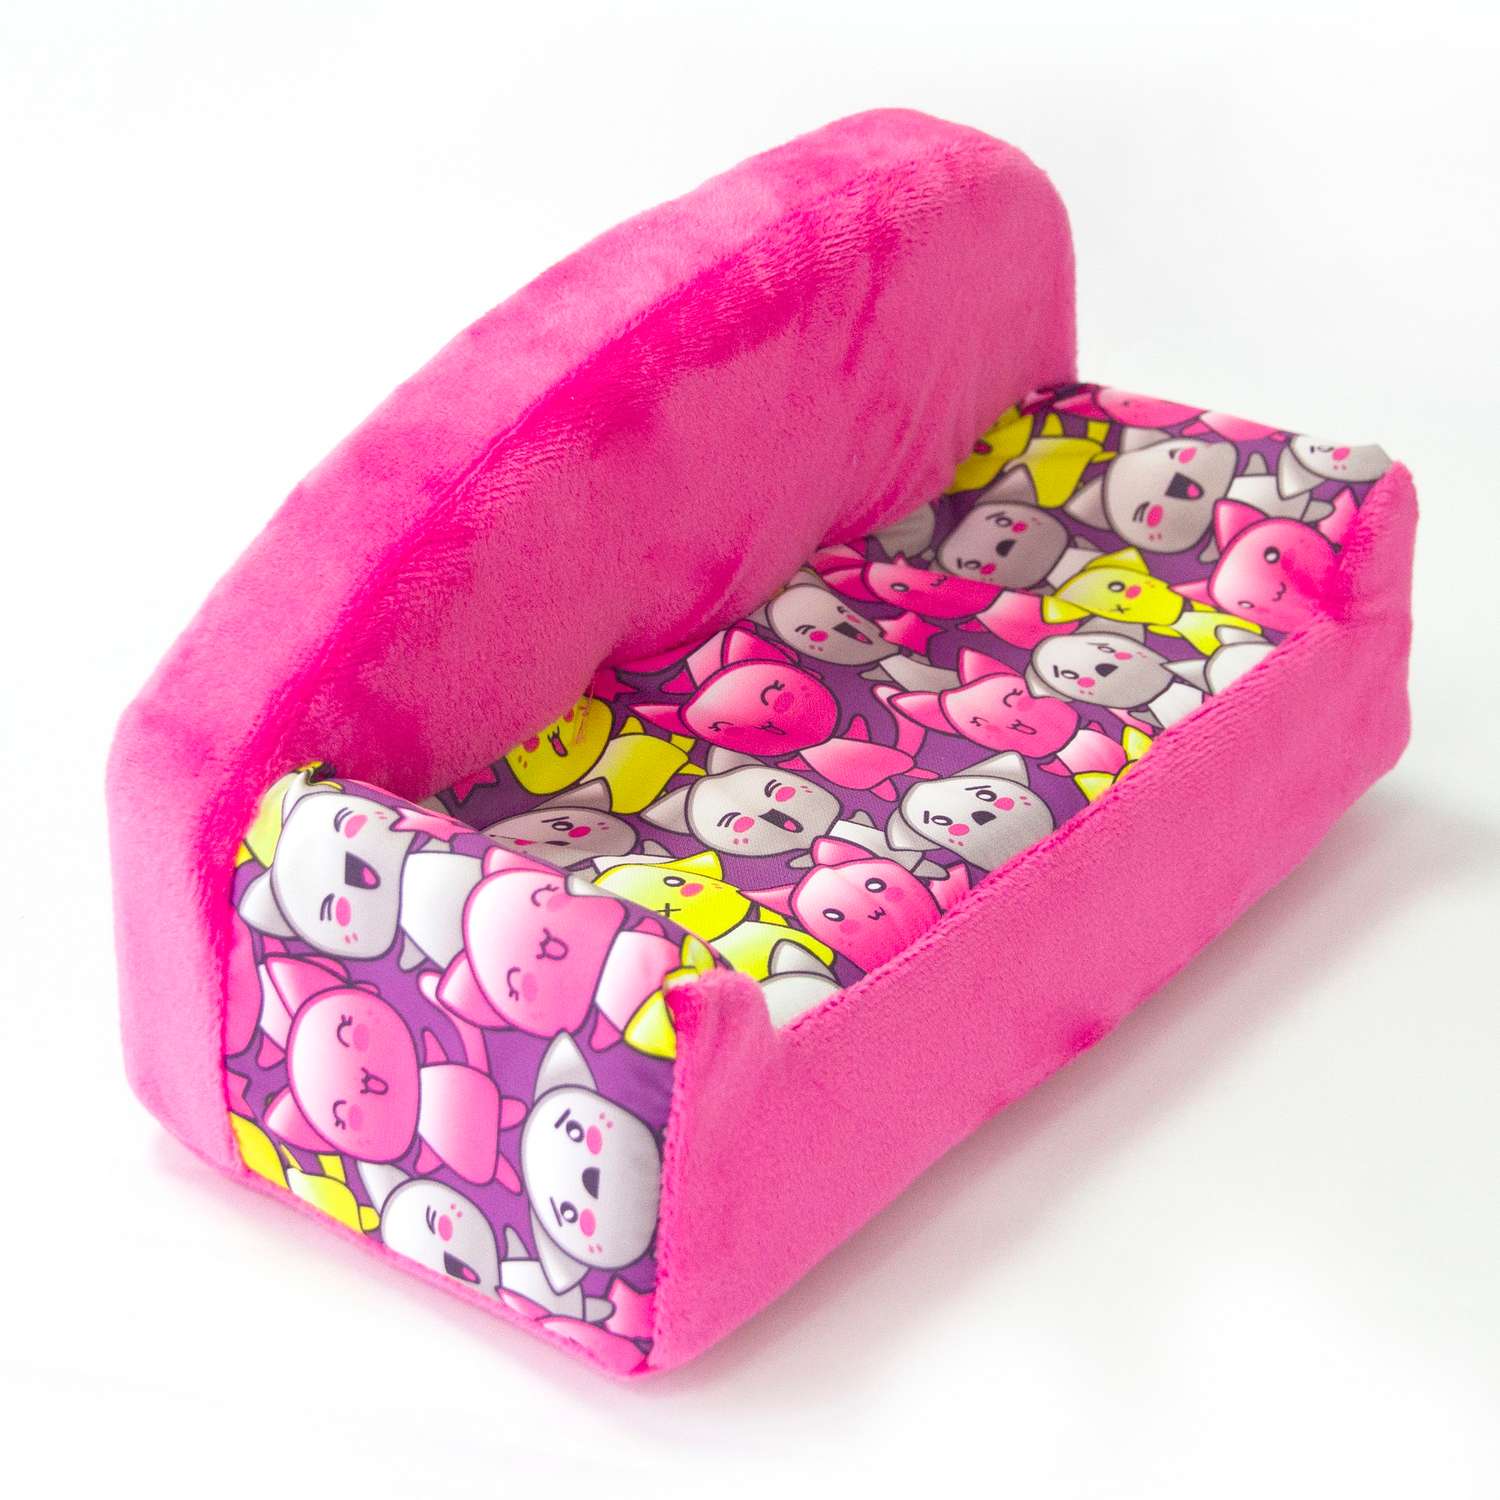 Набор мебели для кукол Belon familia Принт хор котят фиолетовый диван с круглой спинкой 2 подушки НМ-002/1-33 - фото 3